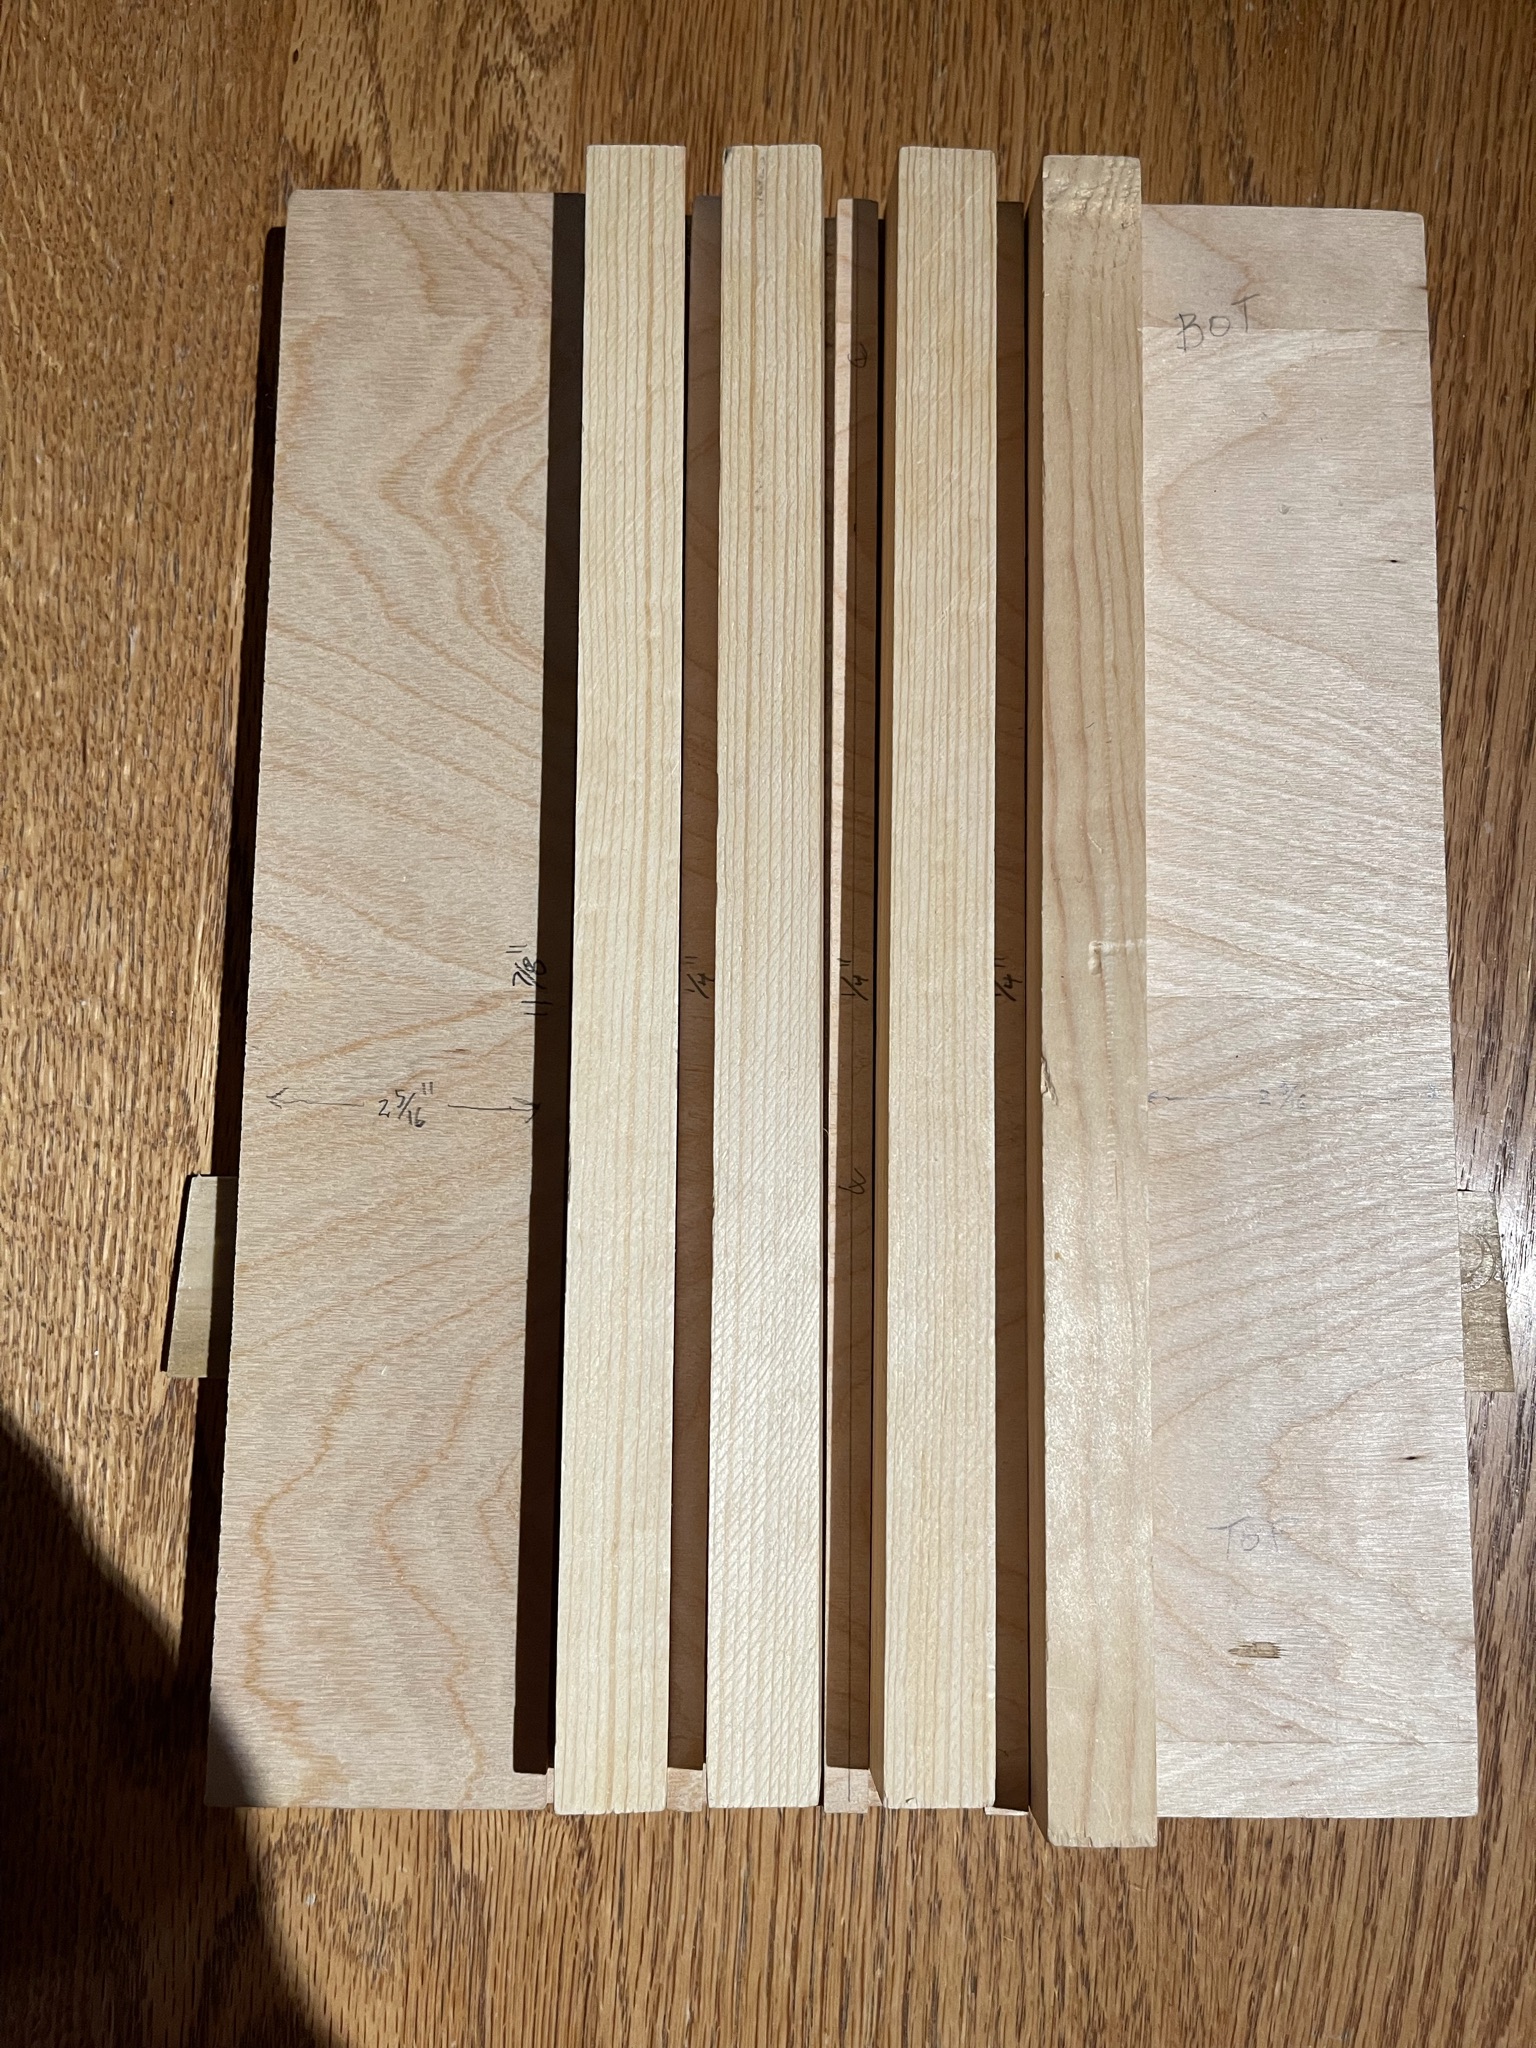 1/2 Inch Wood racks in Jig